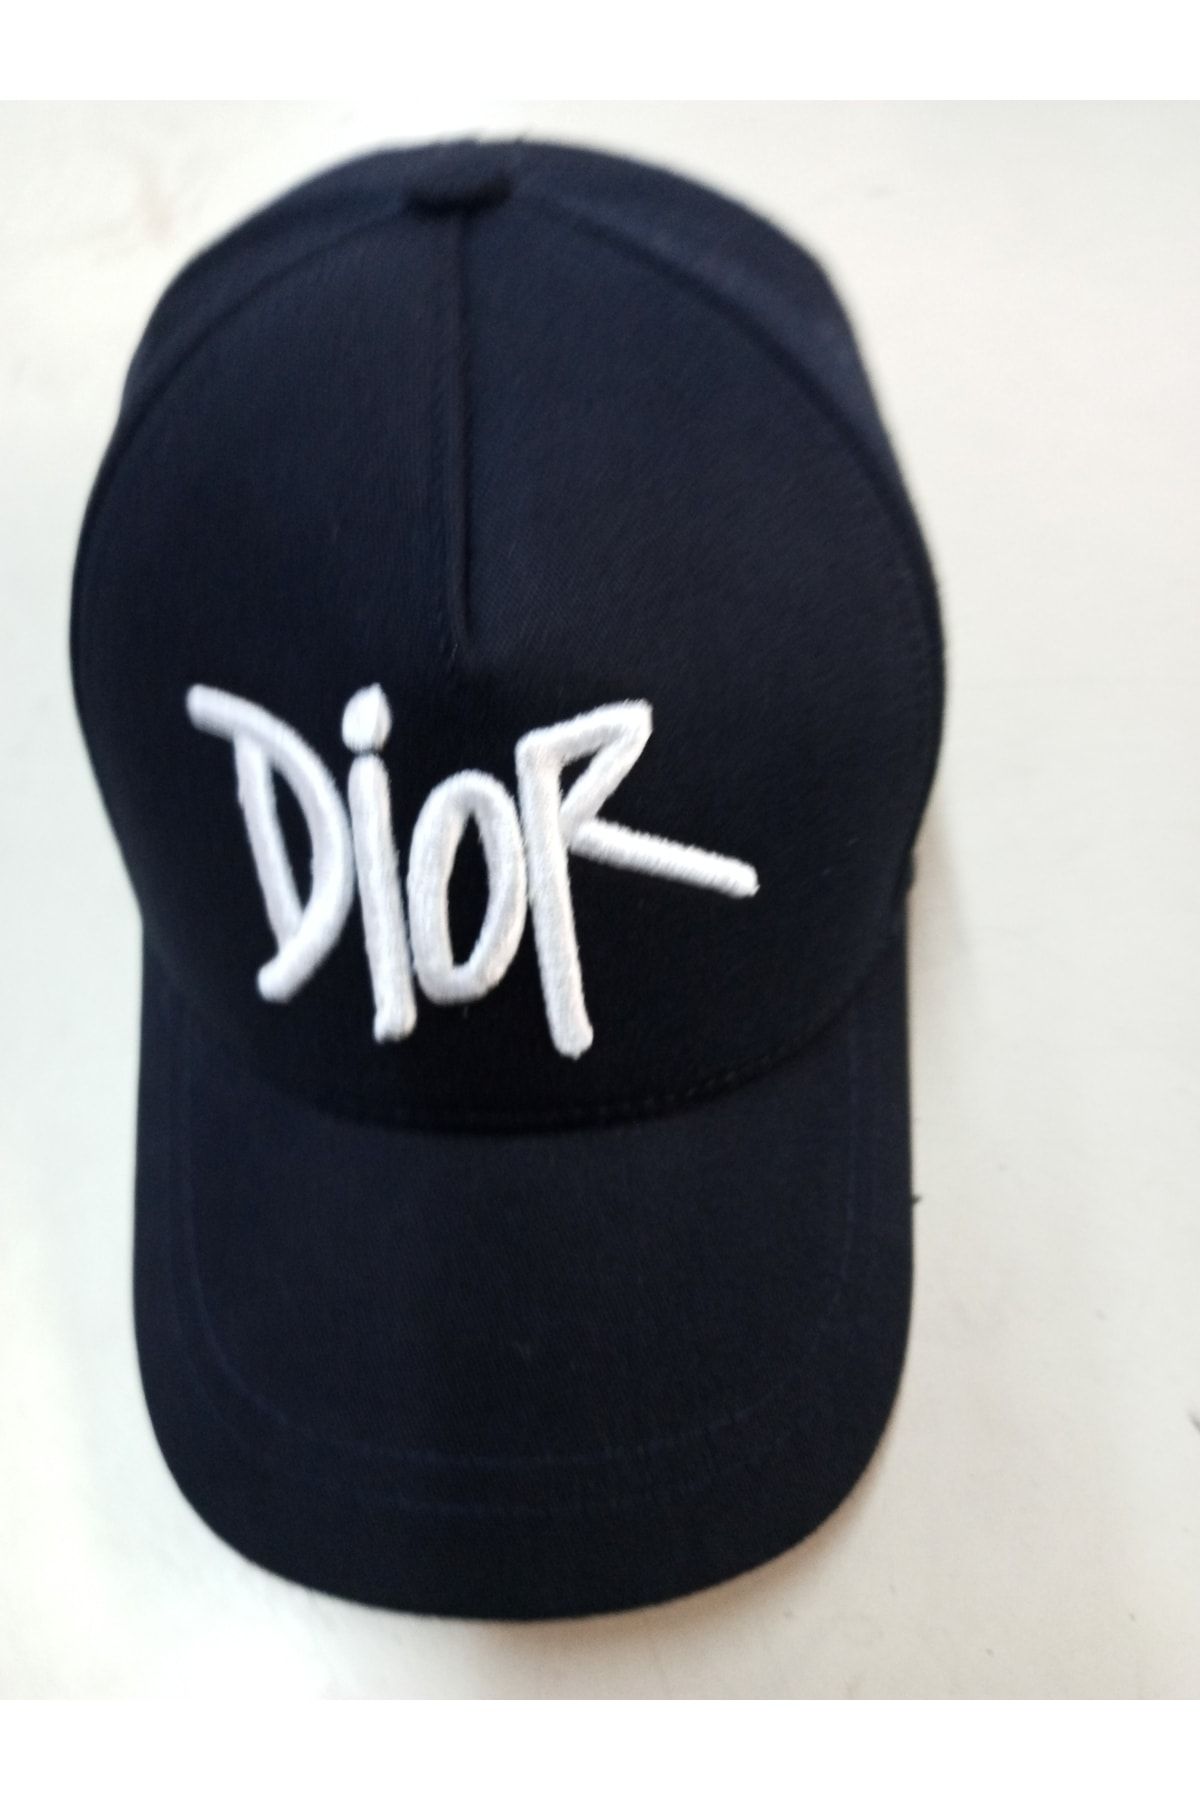 3aaa Dior Şapka Çocuk Boy